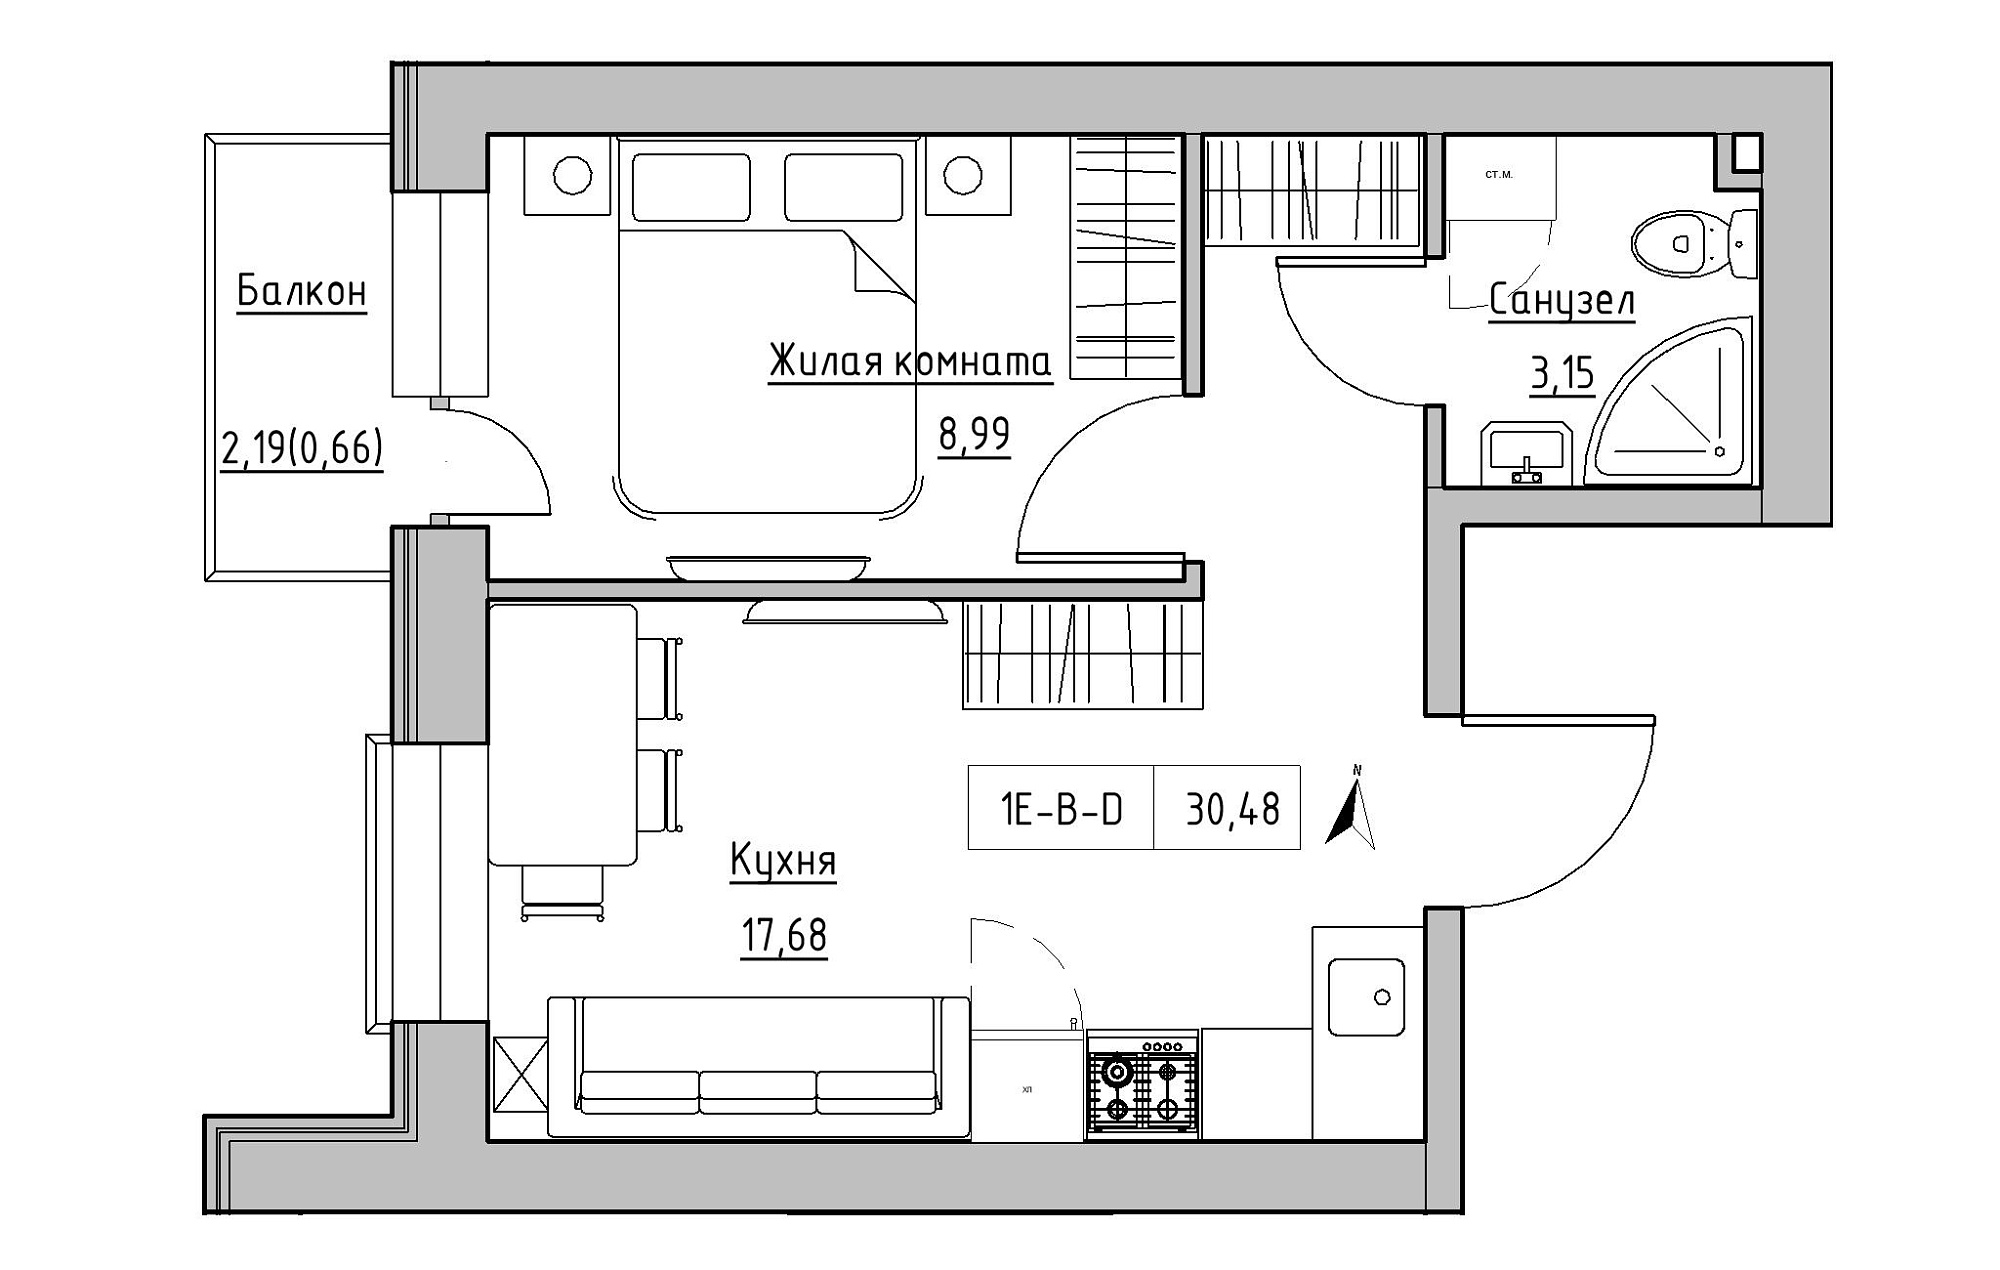 Планування 1-к квартира площею 30.48м2, KS-019-03/0003.